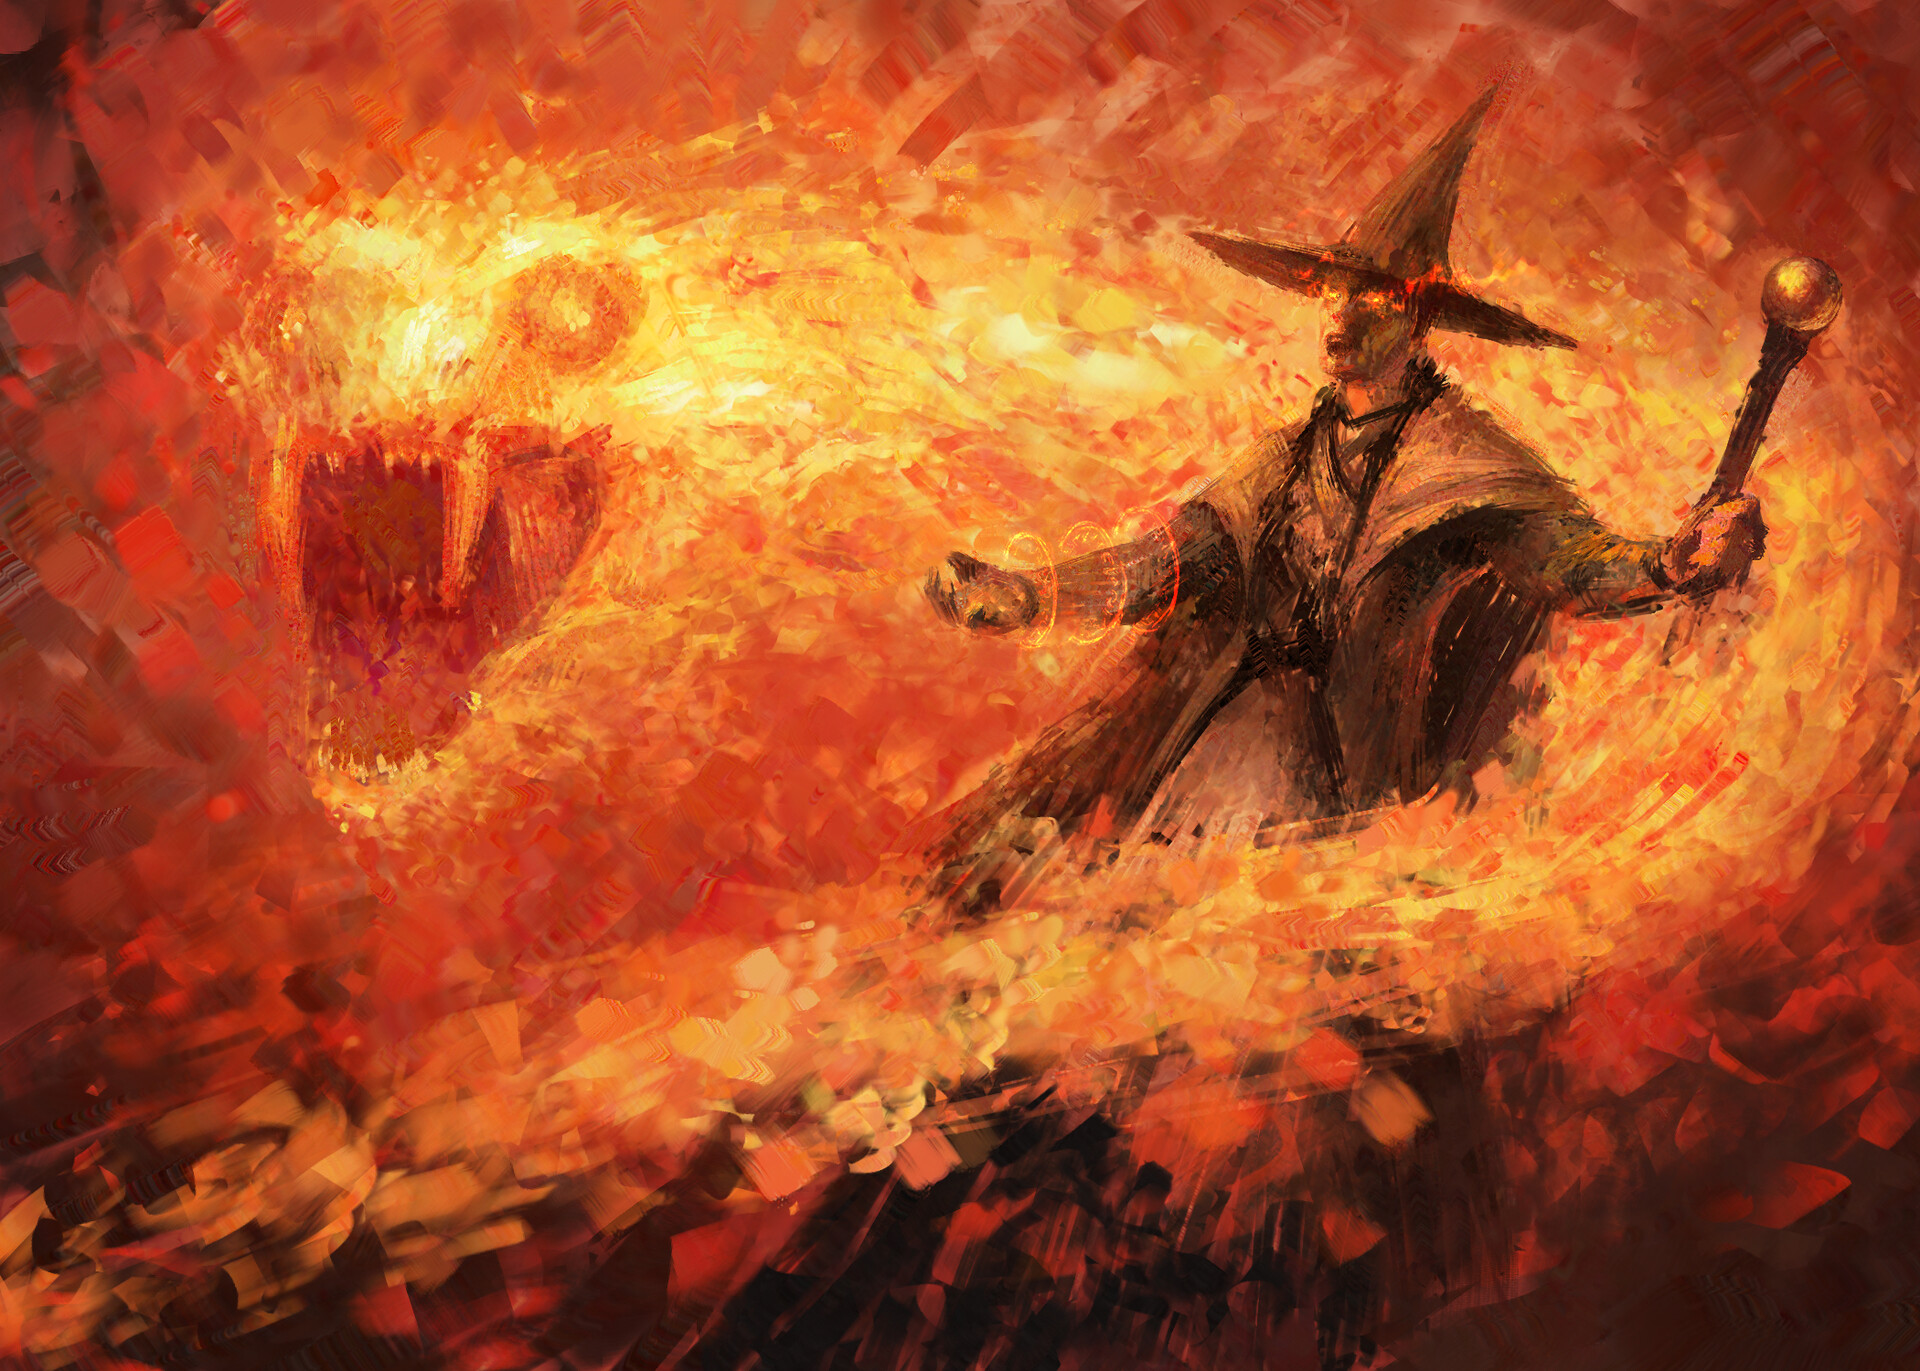 Fire sorcerer by Jo Lieberman